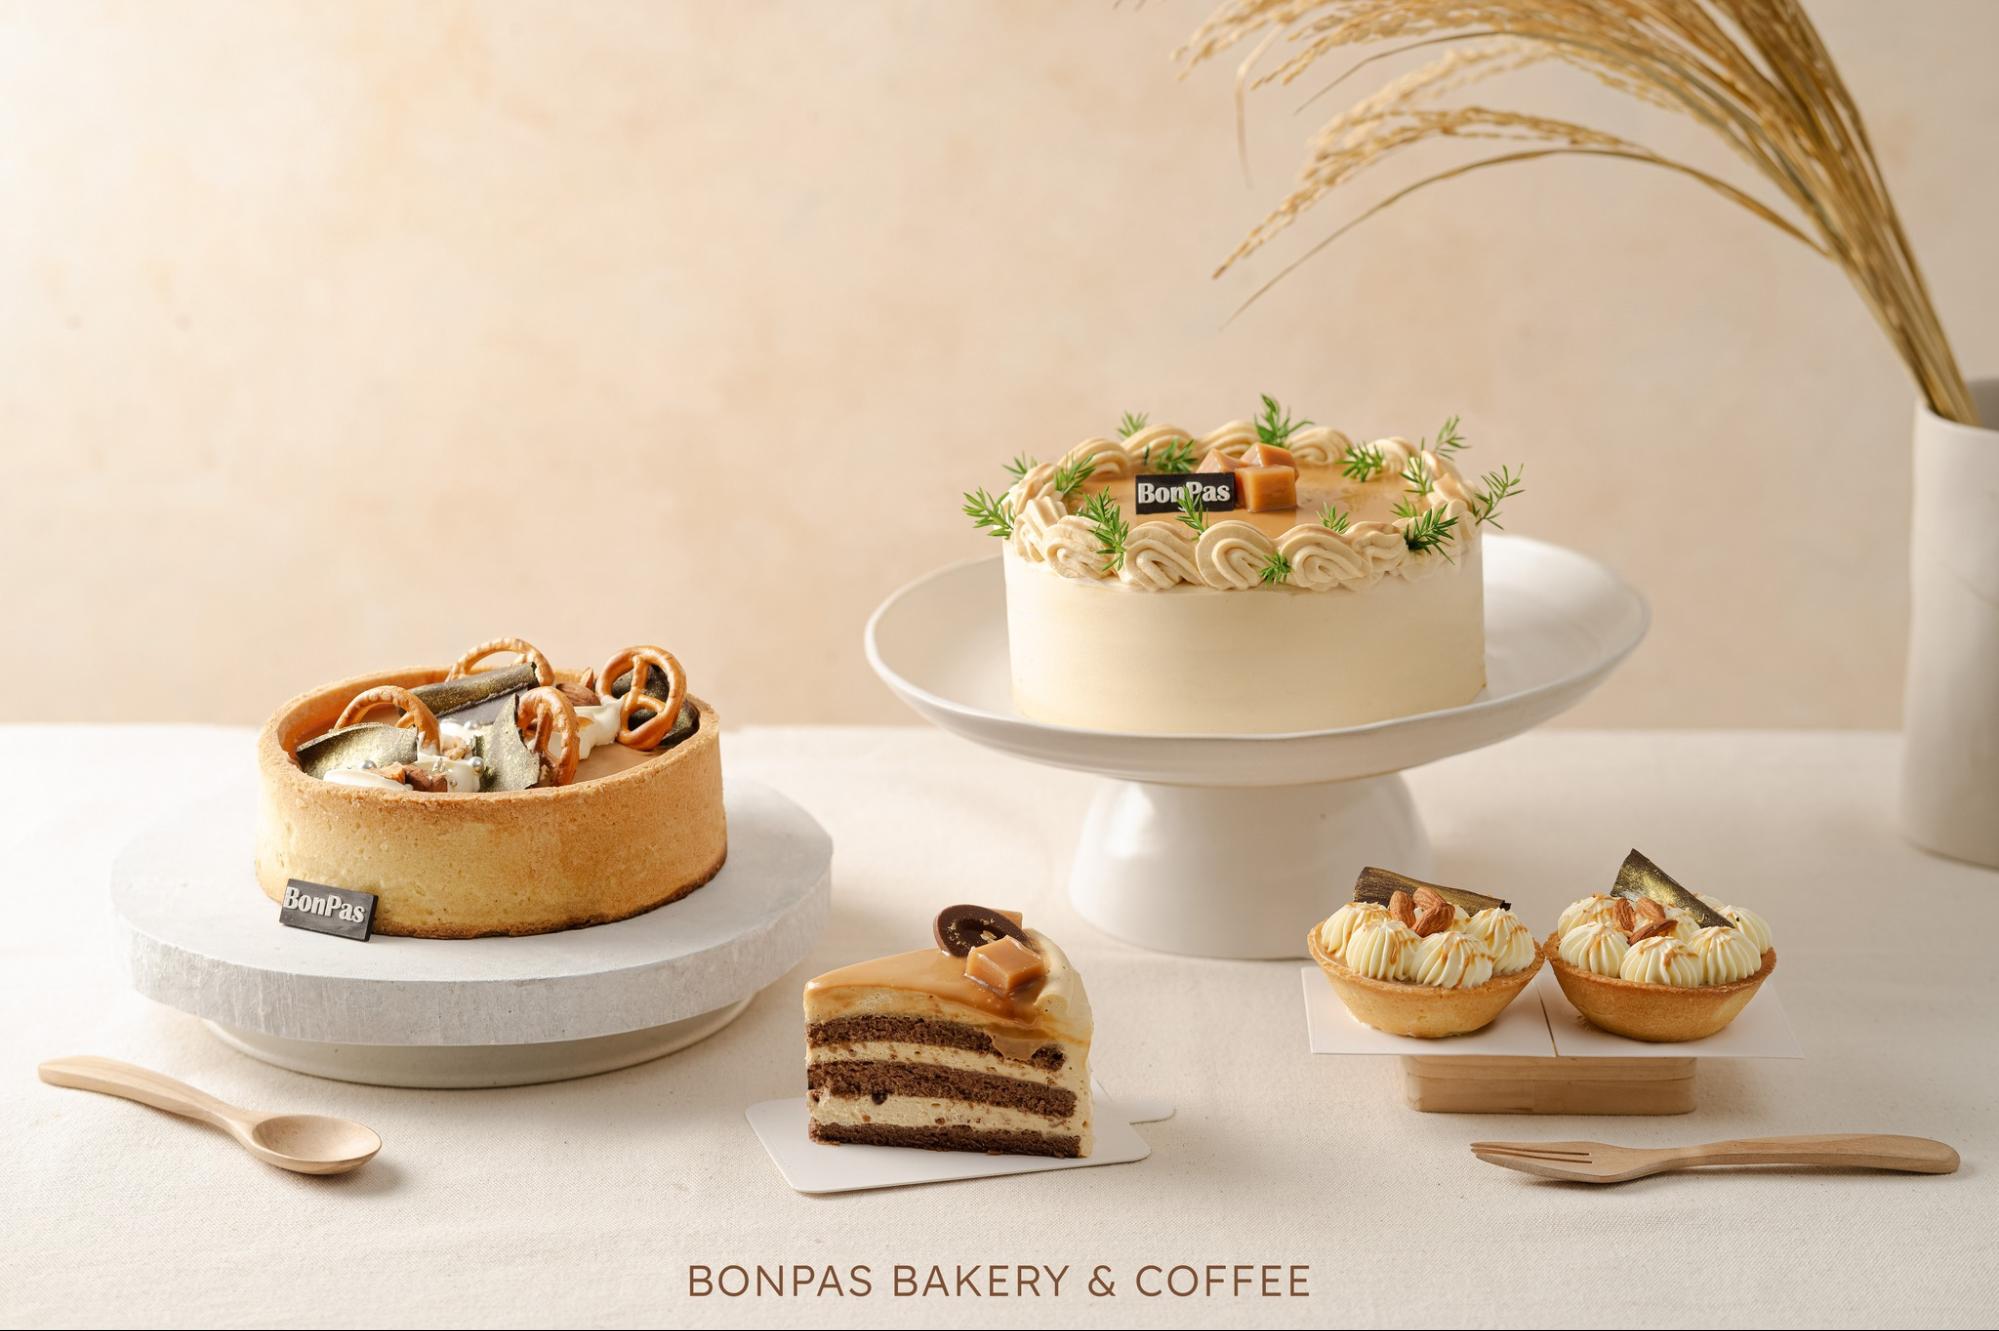 Các khuôn mẫu bánh của Bonpas Bakery phong phú sắc tố, mùi vị phong phú